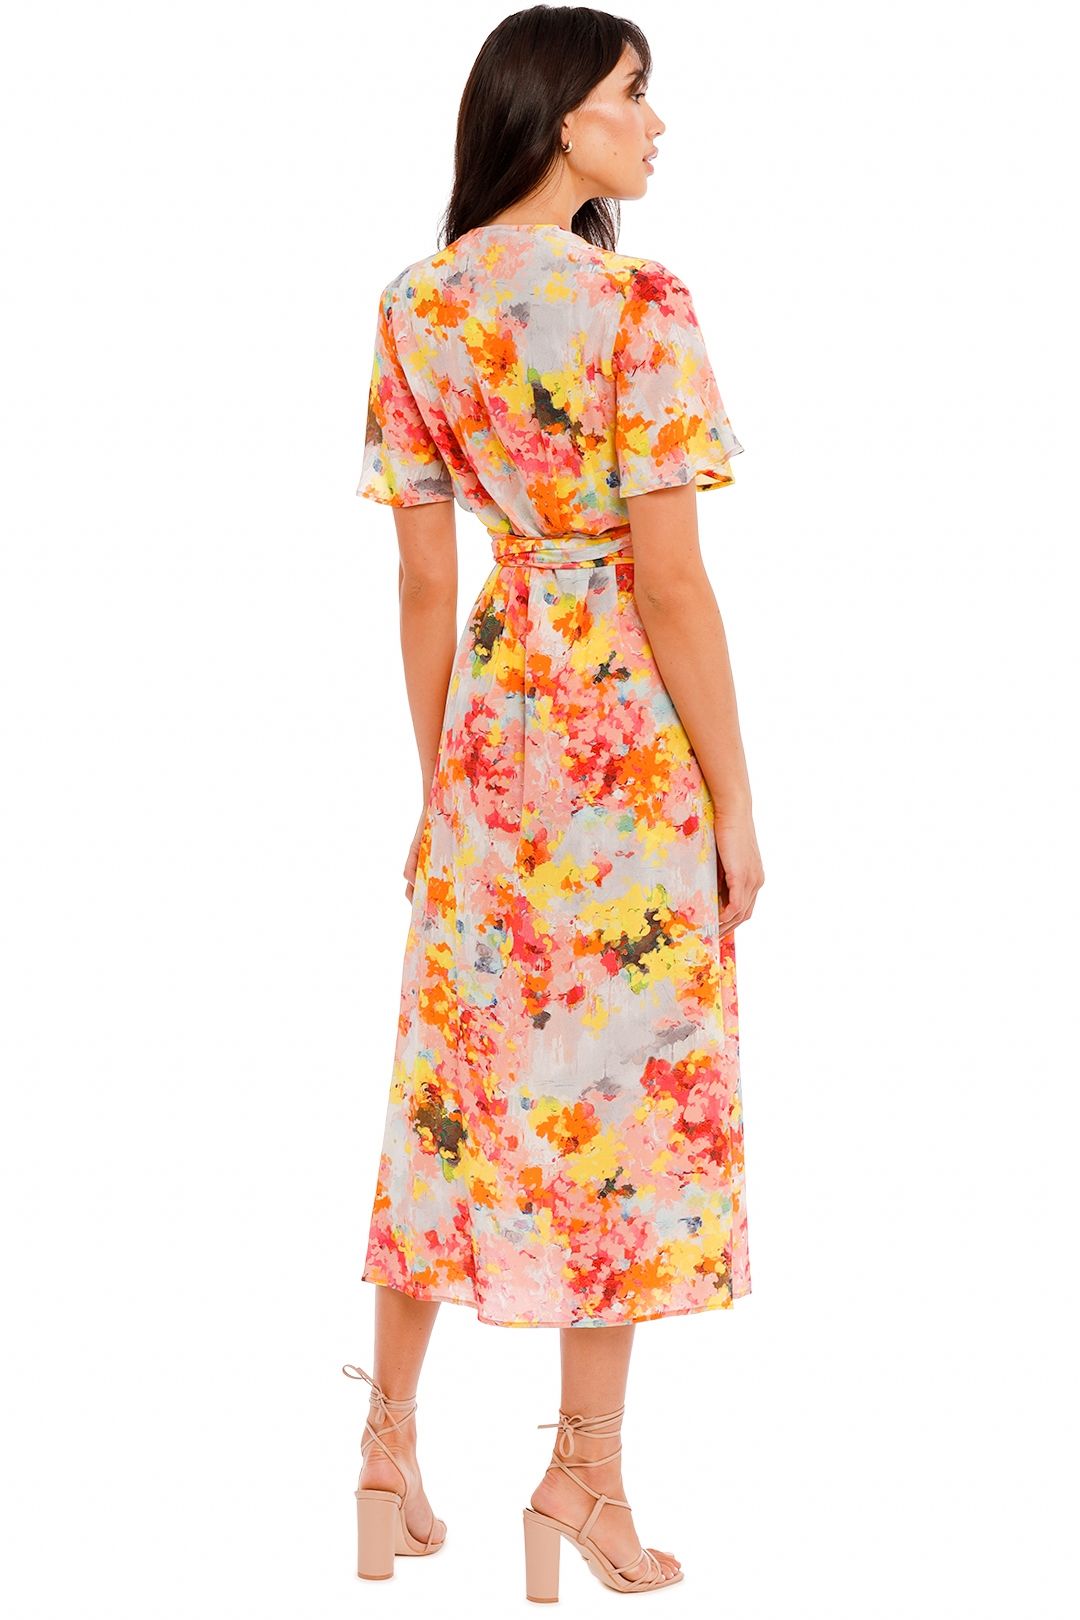 Kate Sylvester Meg Dress in Sunshine floral